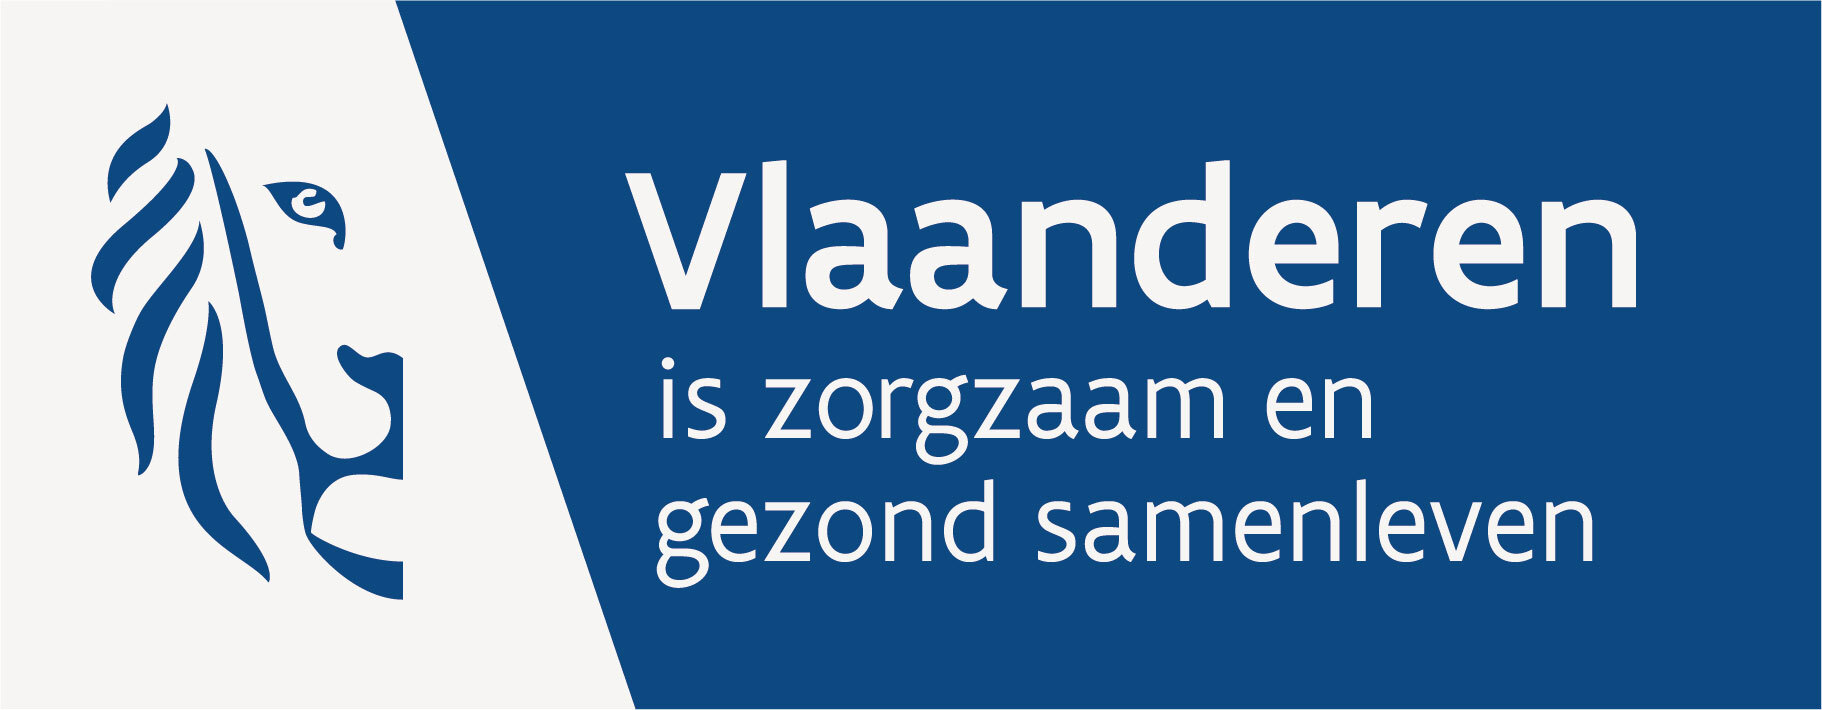 Logo Vlaanderen is zorgzaam en gezond samenleven